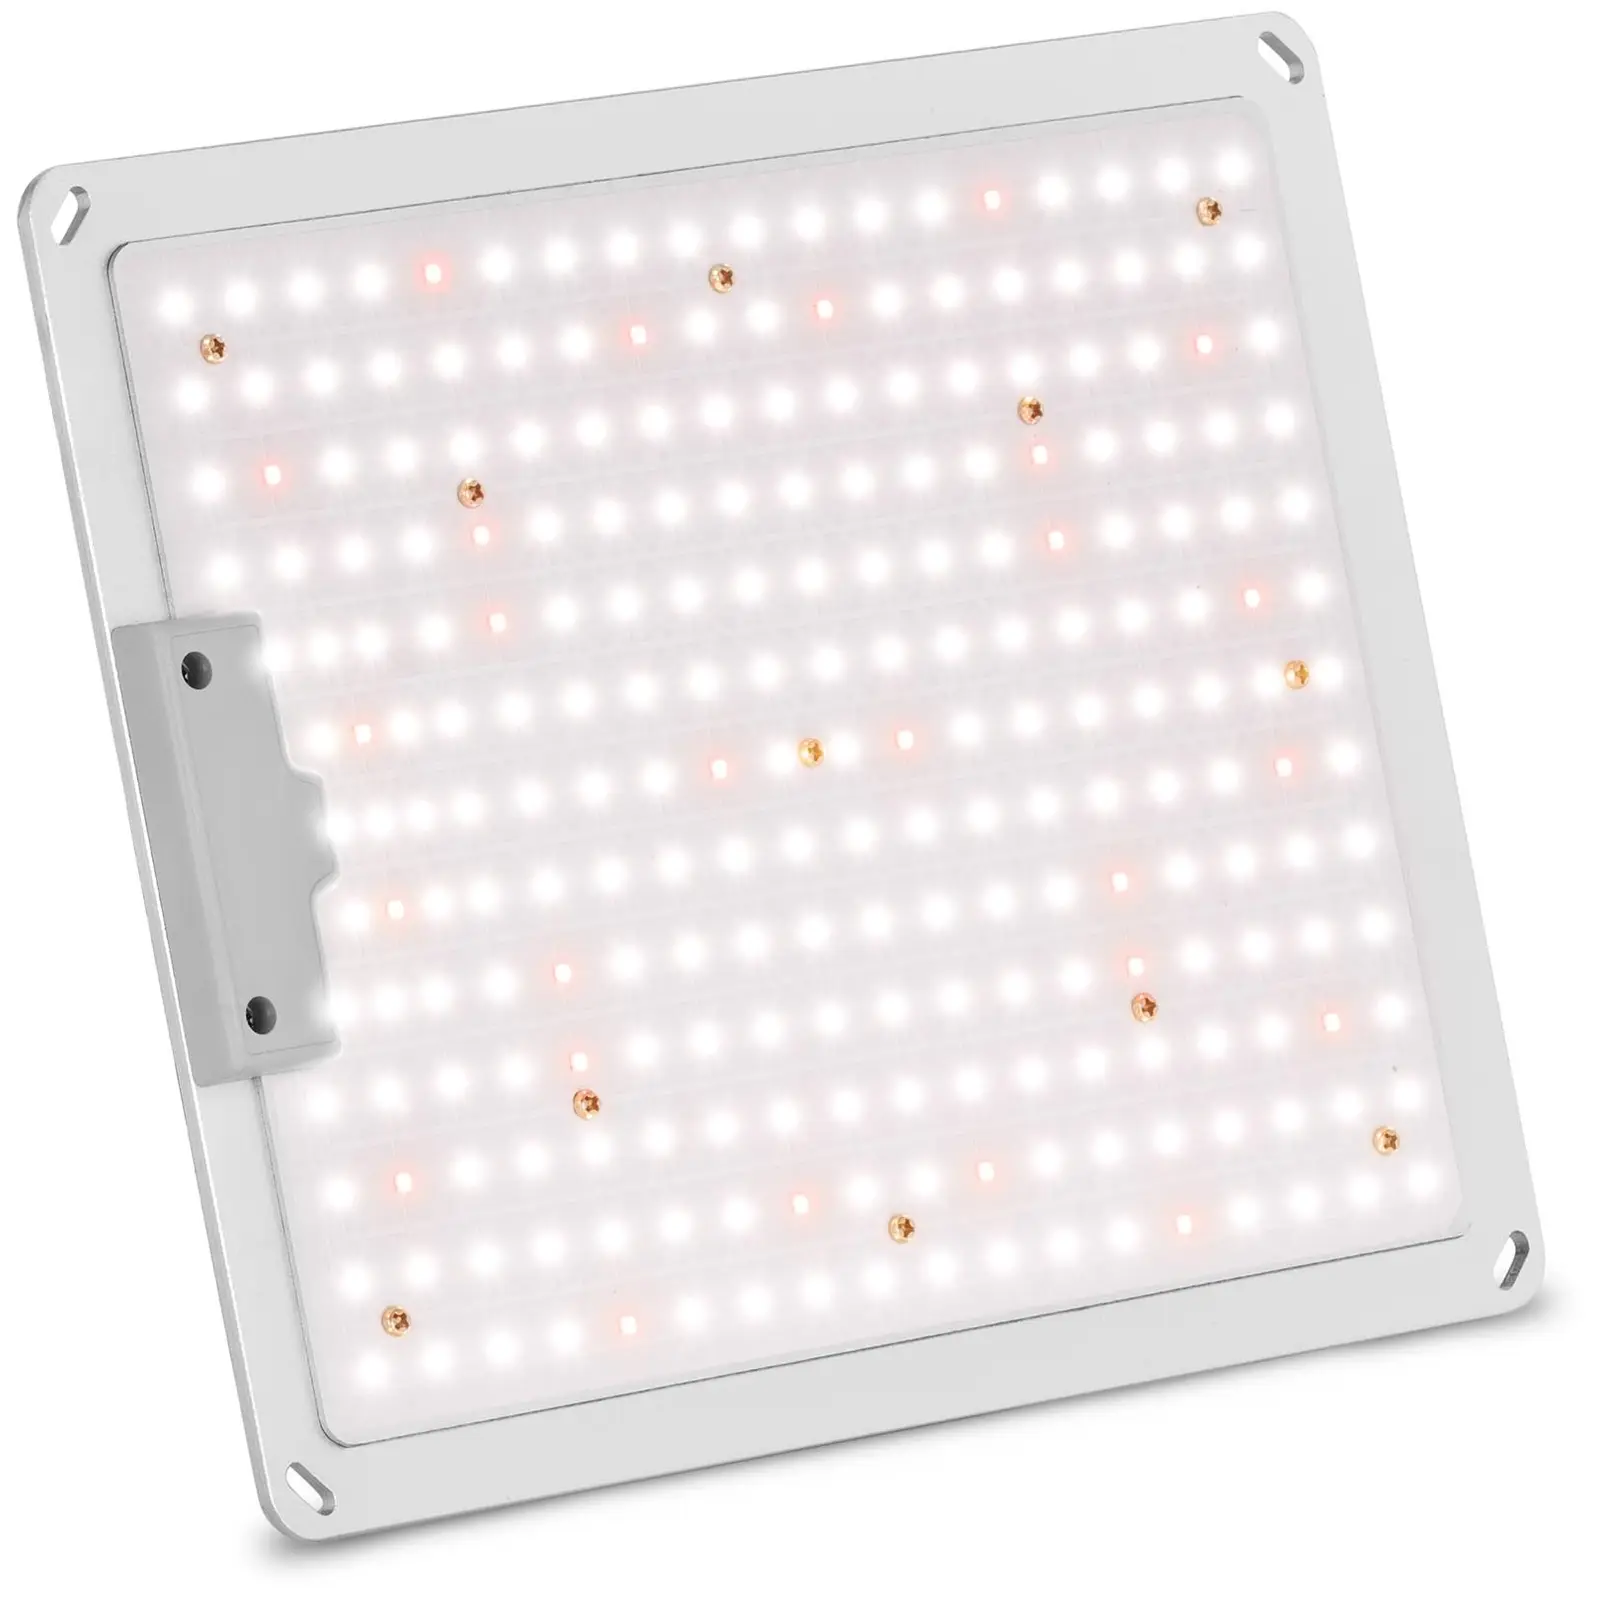 LED Grow Light - Πλήρες φάσμα - 110 W - 234 LED - 10,000 lumens